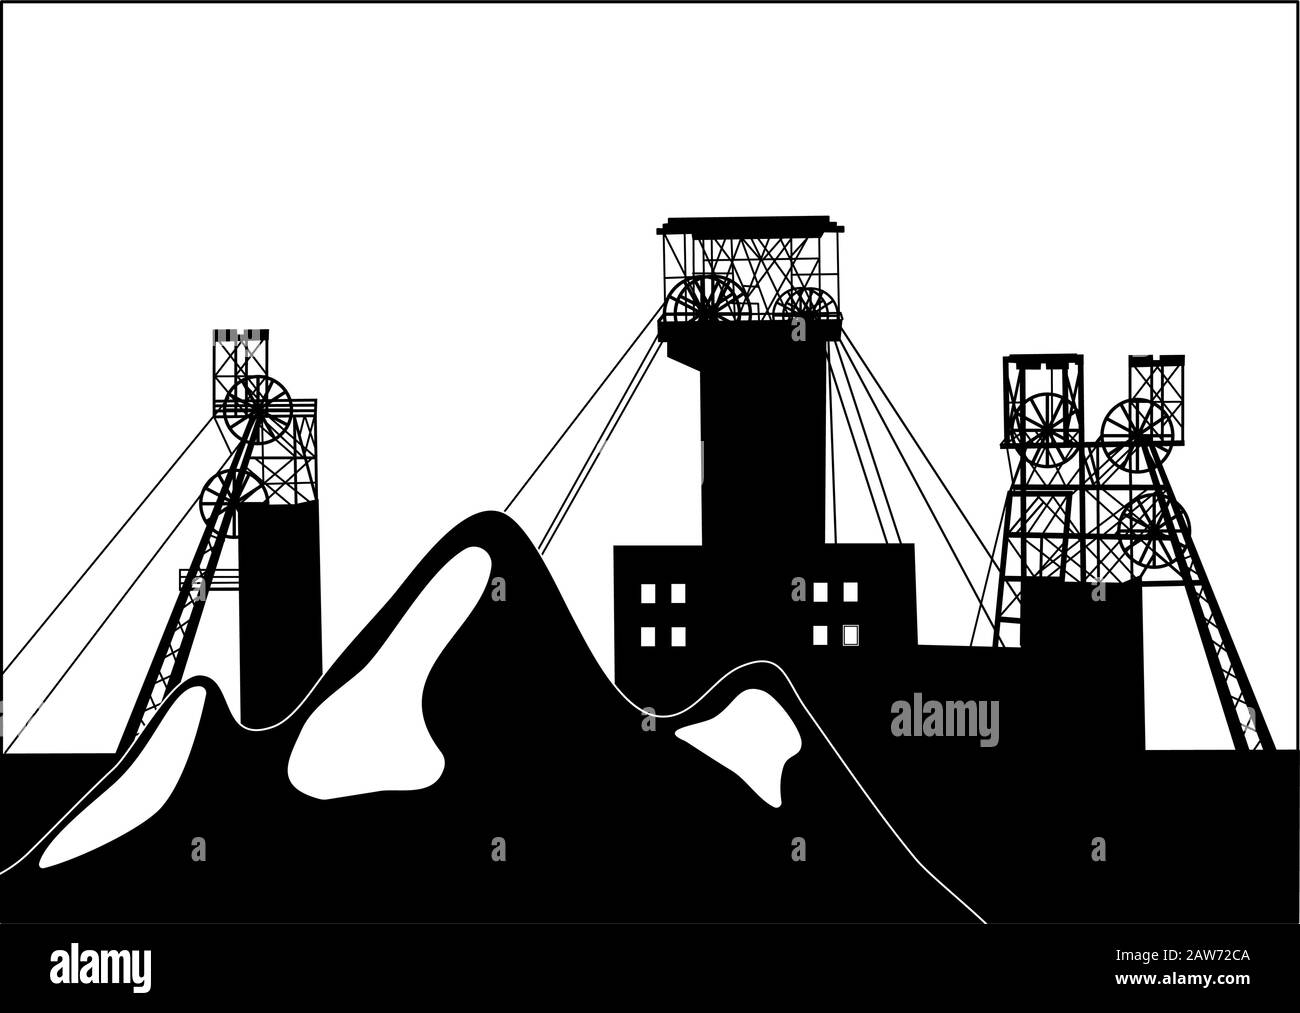 Silhouette vectorielle illustration des sauts de scories et des cadres structurels de l'exploitation minière du charbon au-dessus de l'arbre minier. Concept de métallurgie Illustration de Vecteur